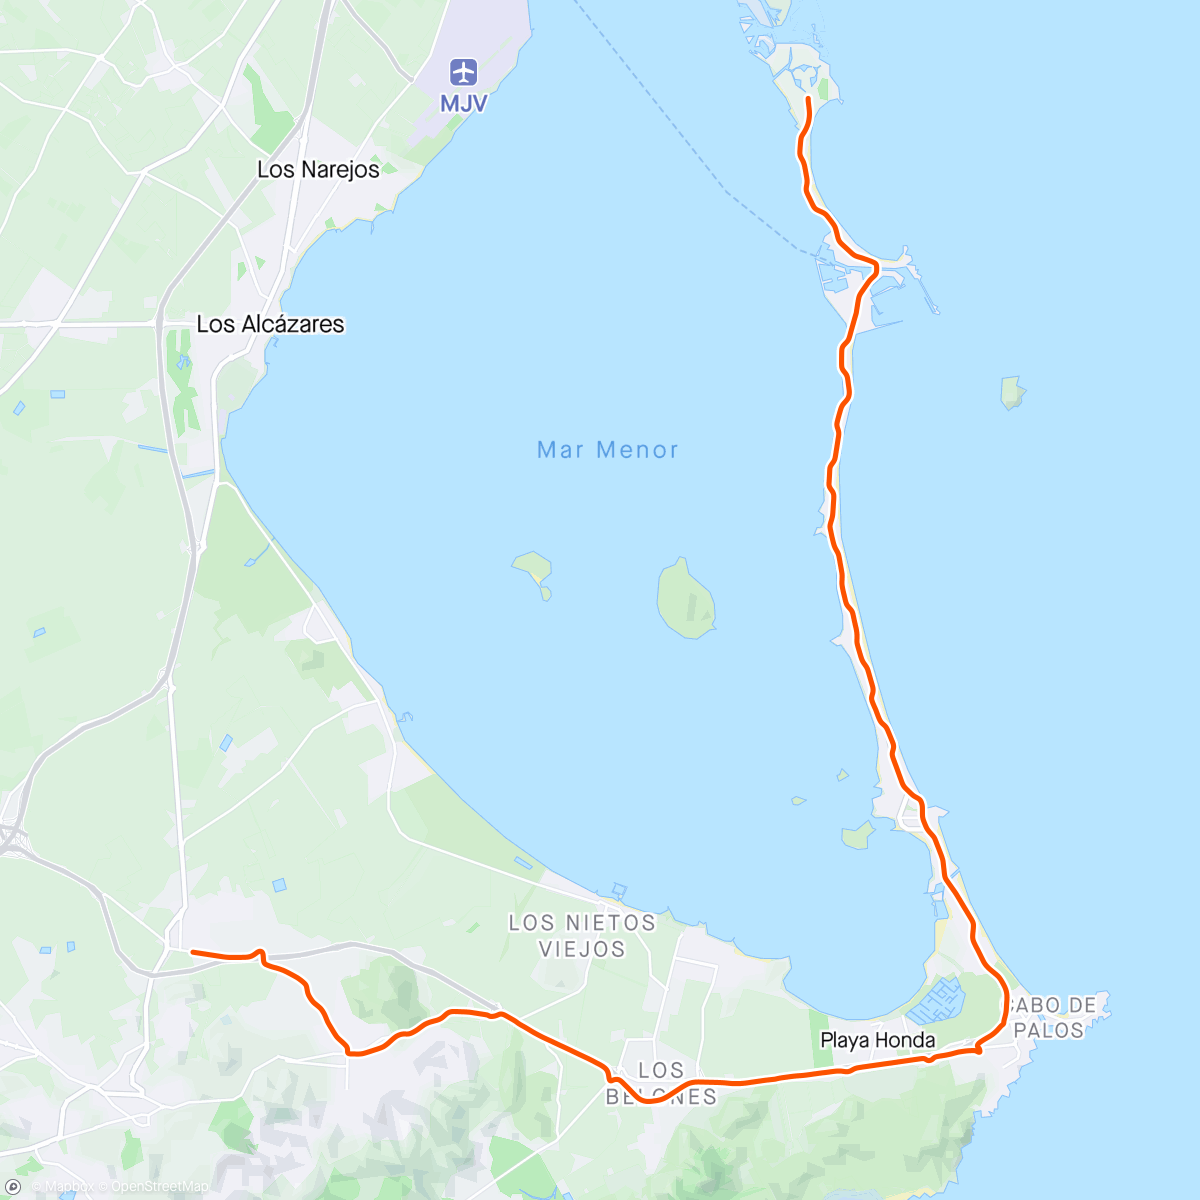 「ROUVY - La Vuelta 2021 | Stage 8 - El Algar」活動的地圖